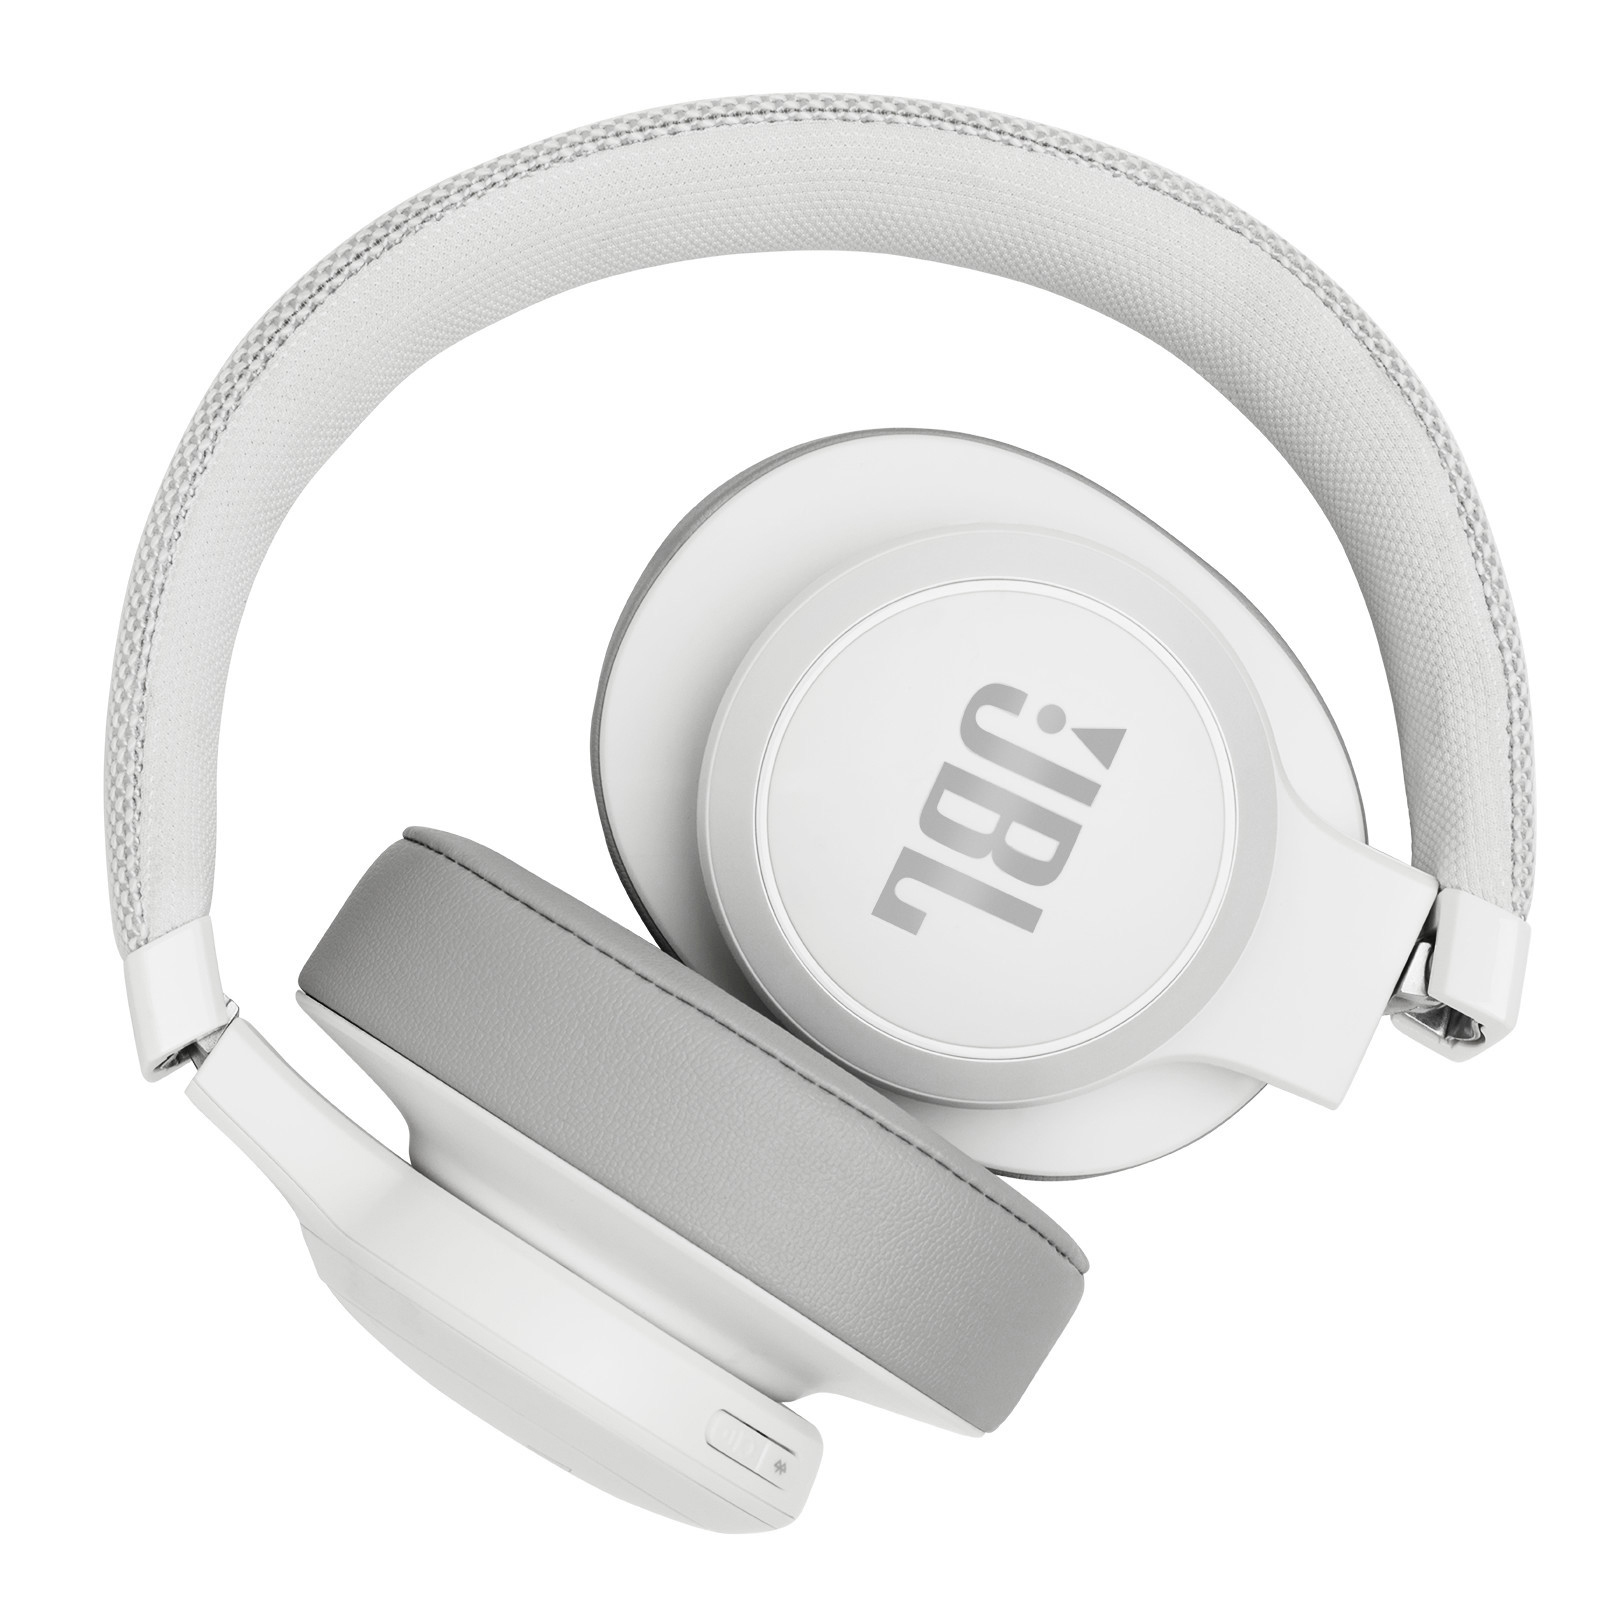 JBL On-ear Weiß BT, Bluetooth Kopfhörer Live 500